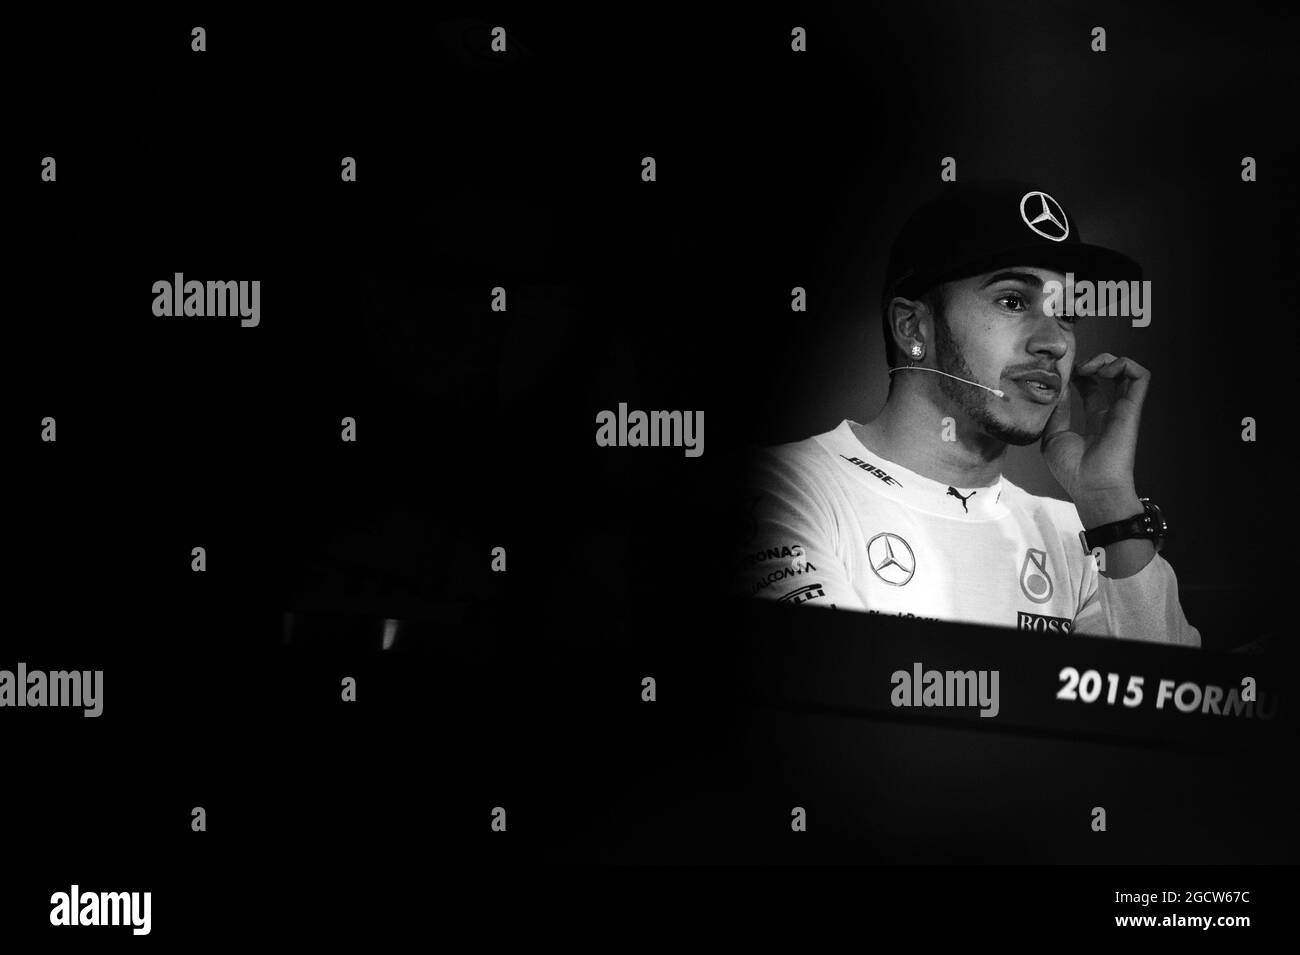 Lewis Hamilton (GBR) Mercedes AMG F1 à la conférence de presse de la FIA. Grand Prix de Chine, dimanche 12 avril 2015. Shanghai, Chine. Banque D'Images